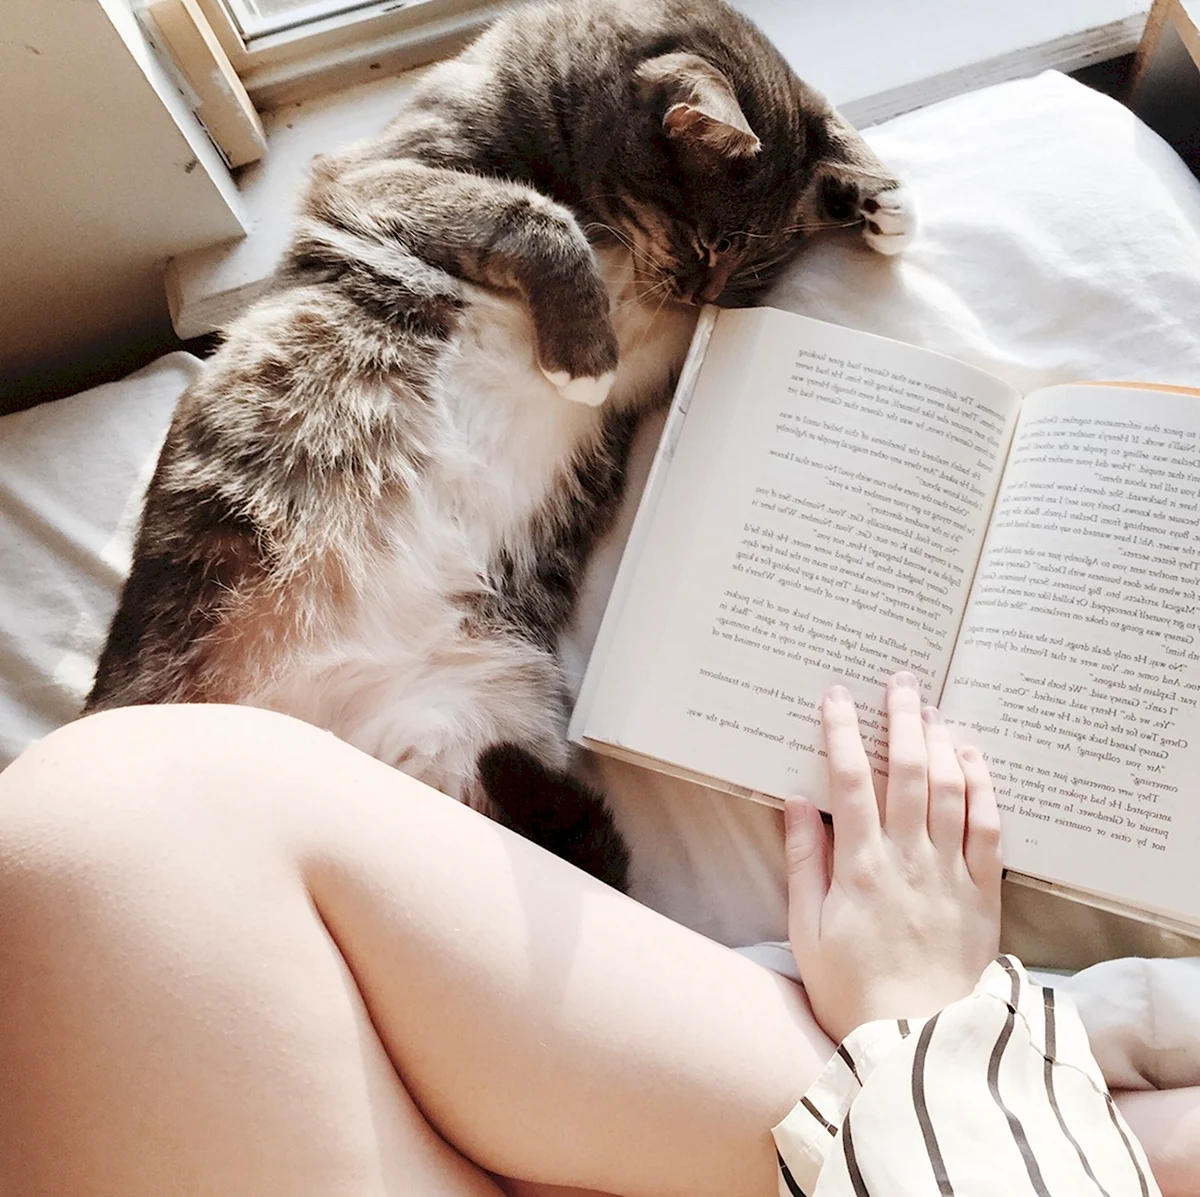 Девушка в постели с книжкой